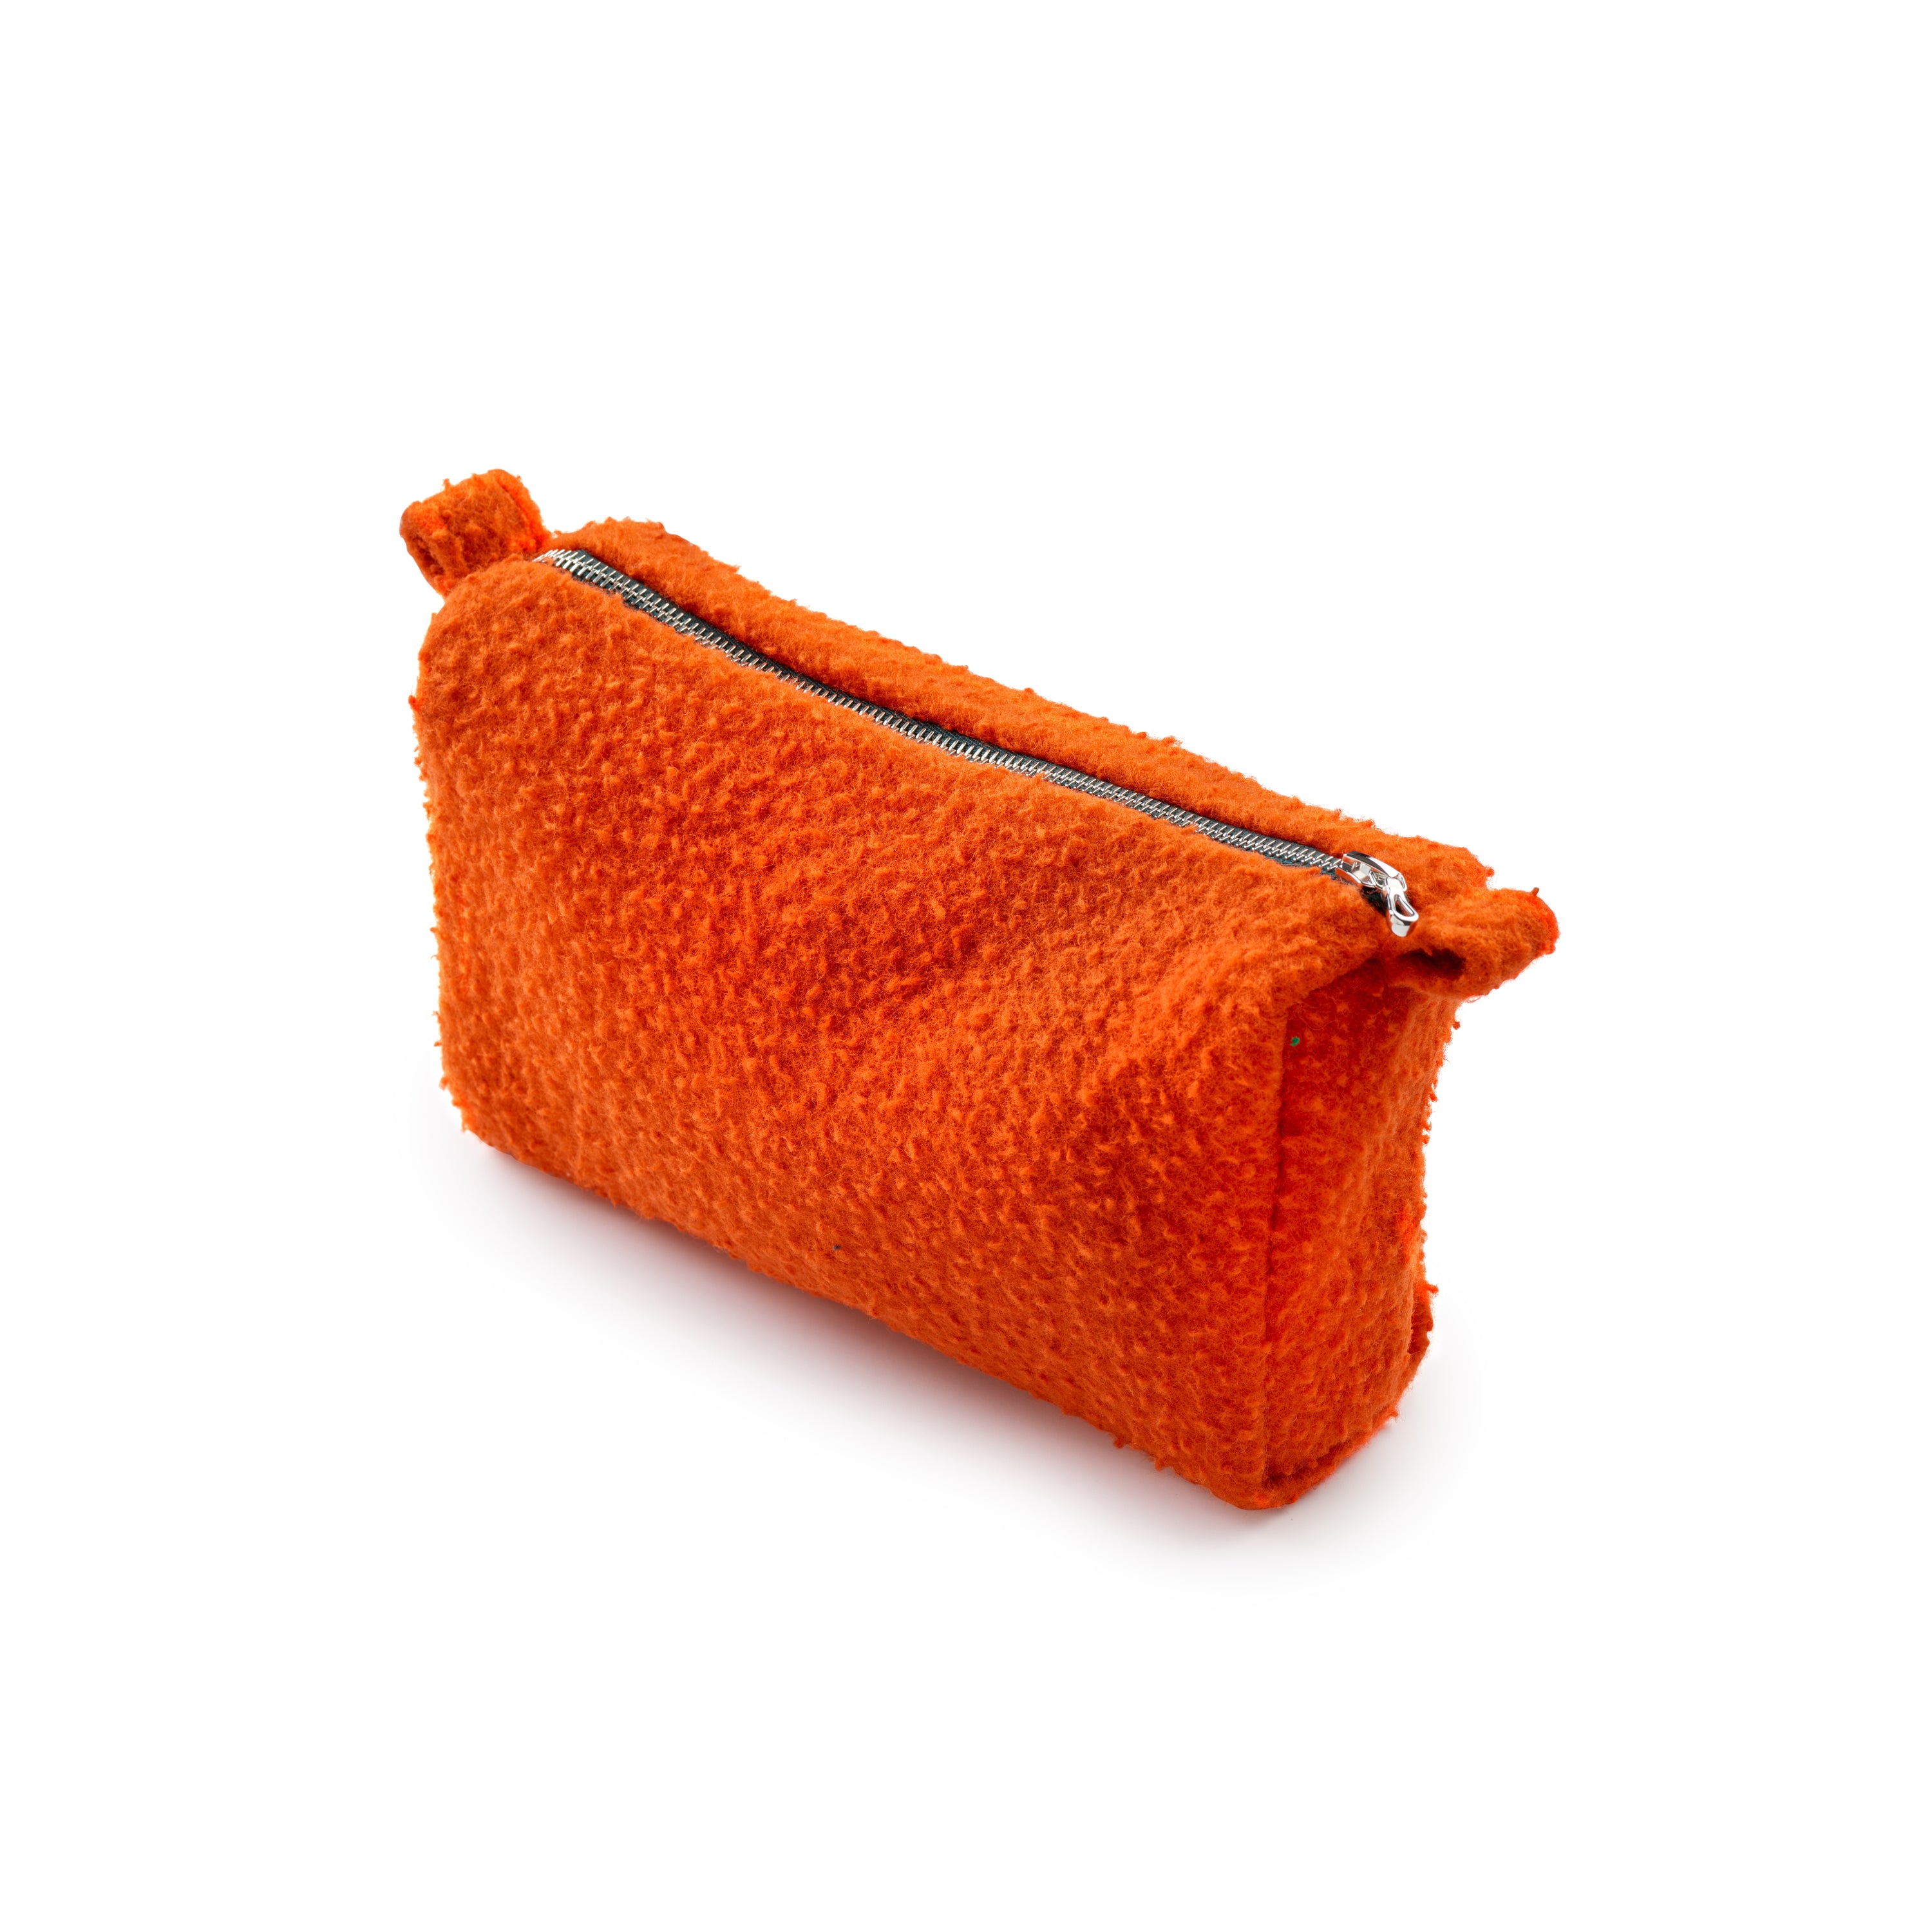 Casentino 'That Orange' Medium Wash Bag